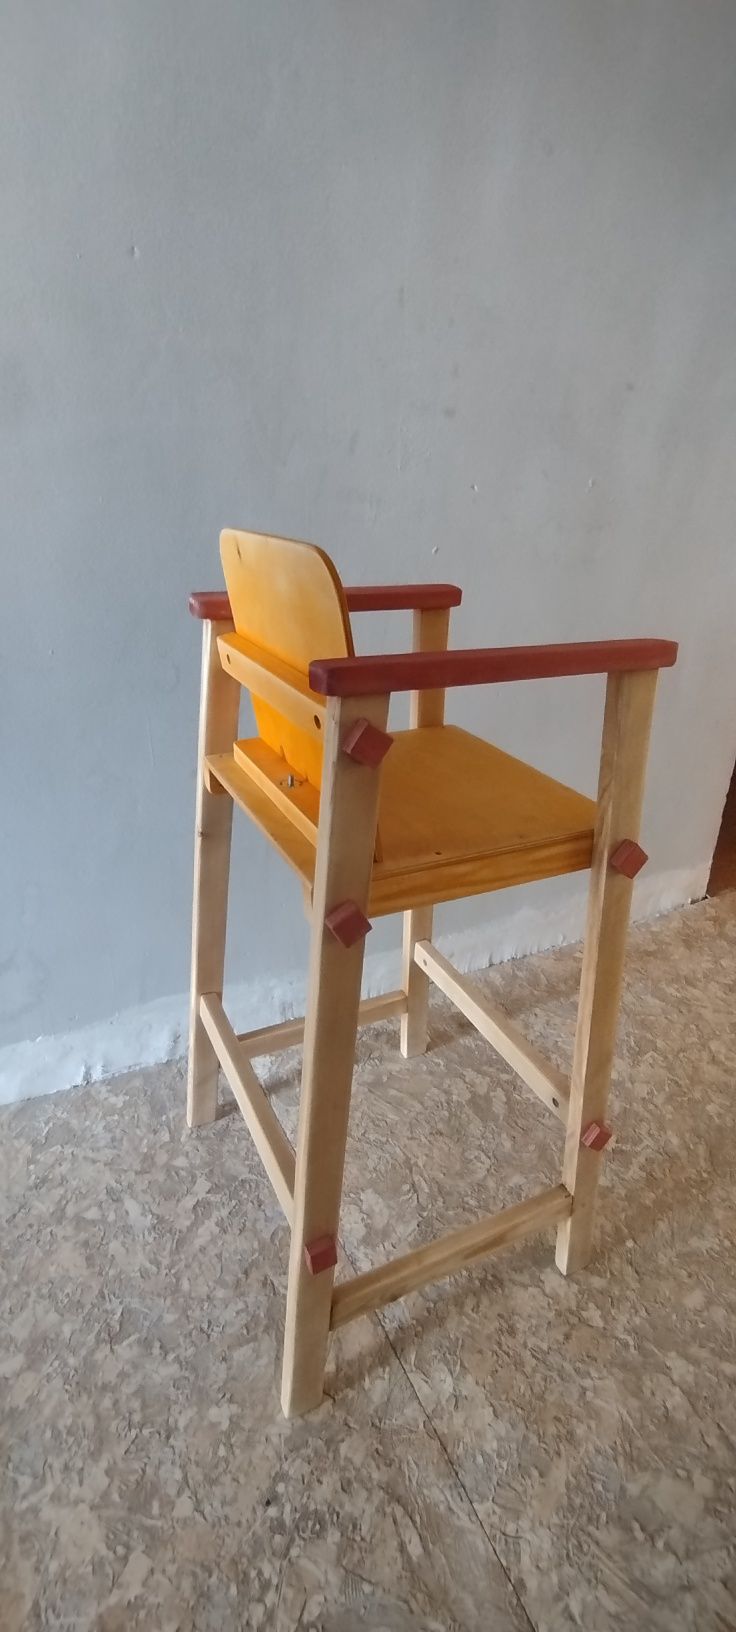 Детские стулья из ручного мастерства